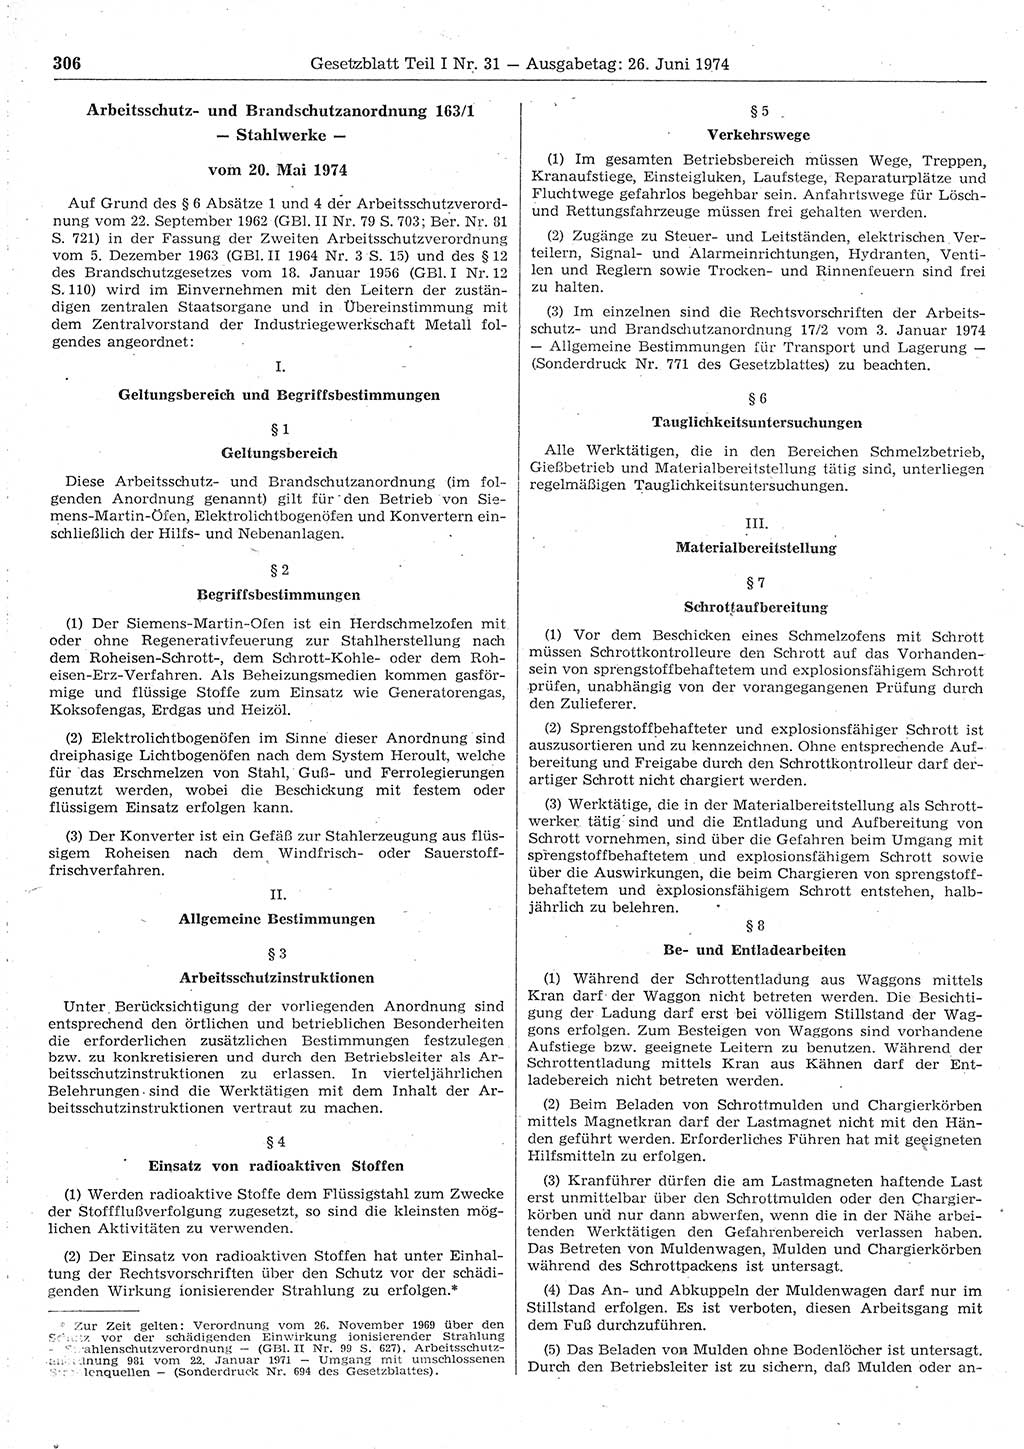 Gesetzblatt (GBl.) der Deutschen Demokratischen Republik (DDR) Teil Ⅰ 1974, Seite 306 (GBl. DDR Ⅰ 1974, S. 306)